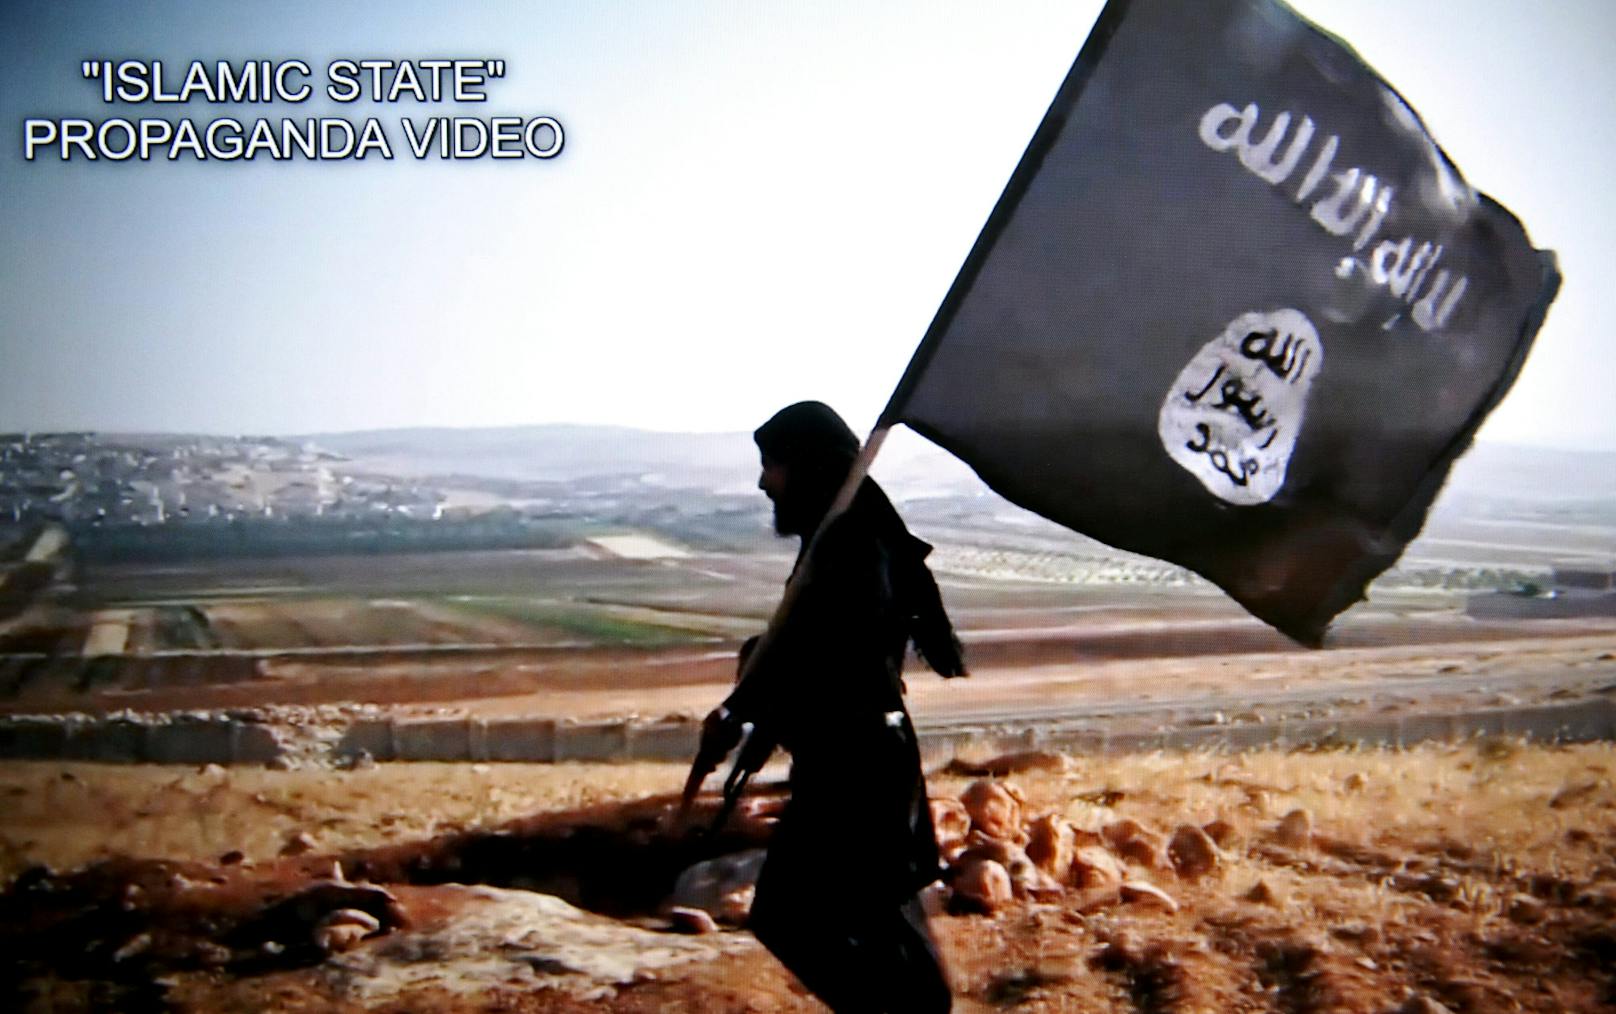 Der Verdächtige teilte IS-Propaganda-Videos (Symbolbild).